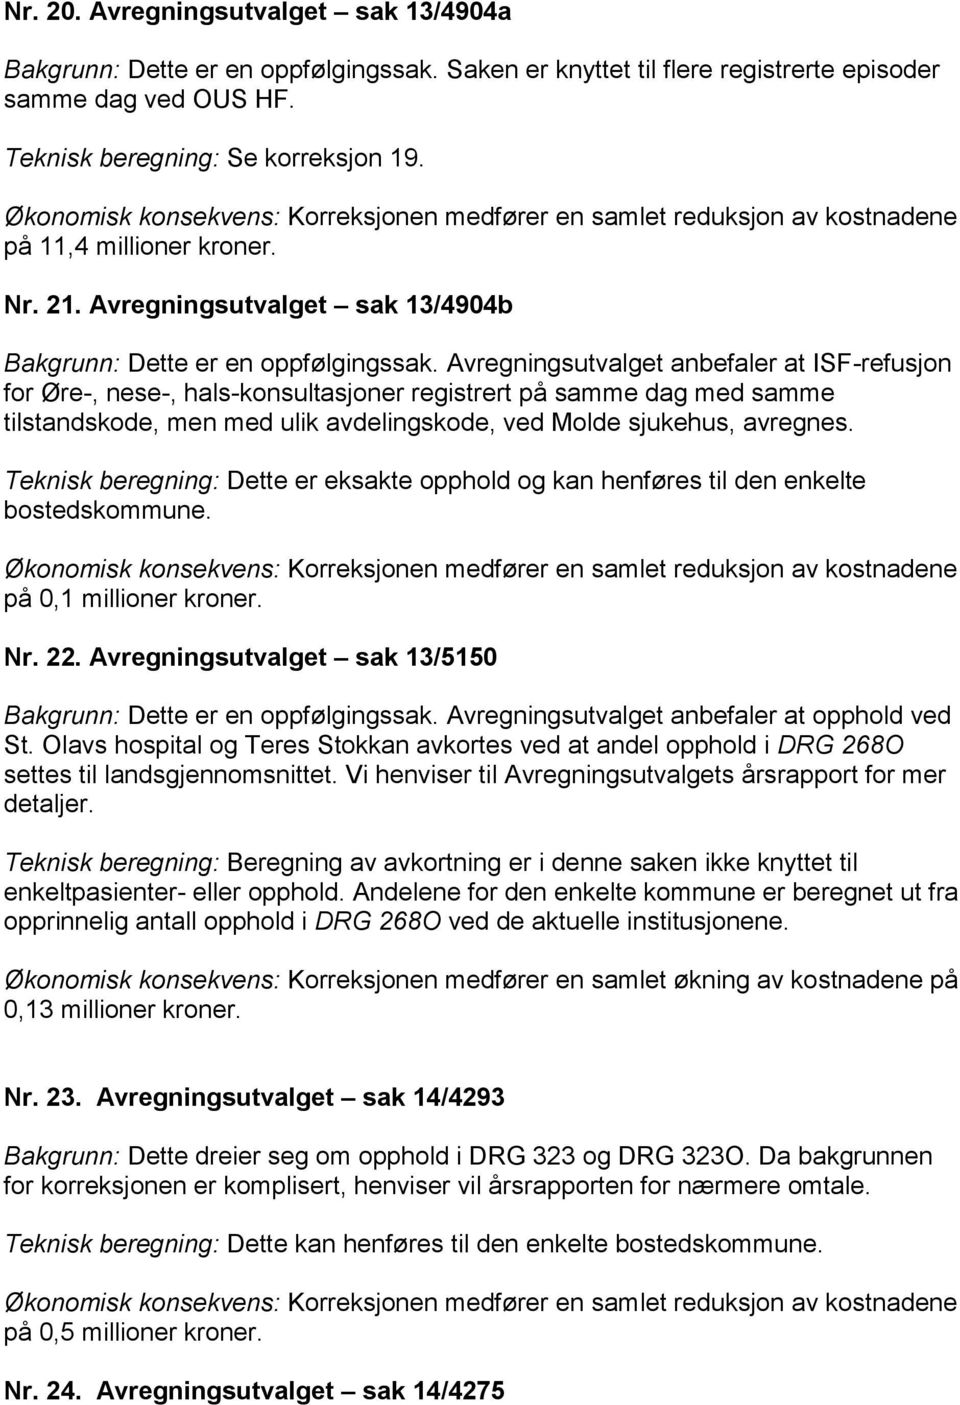 Avregningsutvalget anbefaler at ISF-refusjon for Øre-, nese-, hals-konsultasjoner registrert på samme dag med samme tilstandskode, men med ulik avdelingskode, ved Molde sjukehus, avregnes.